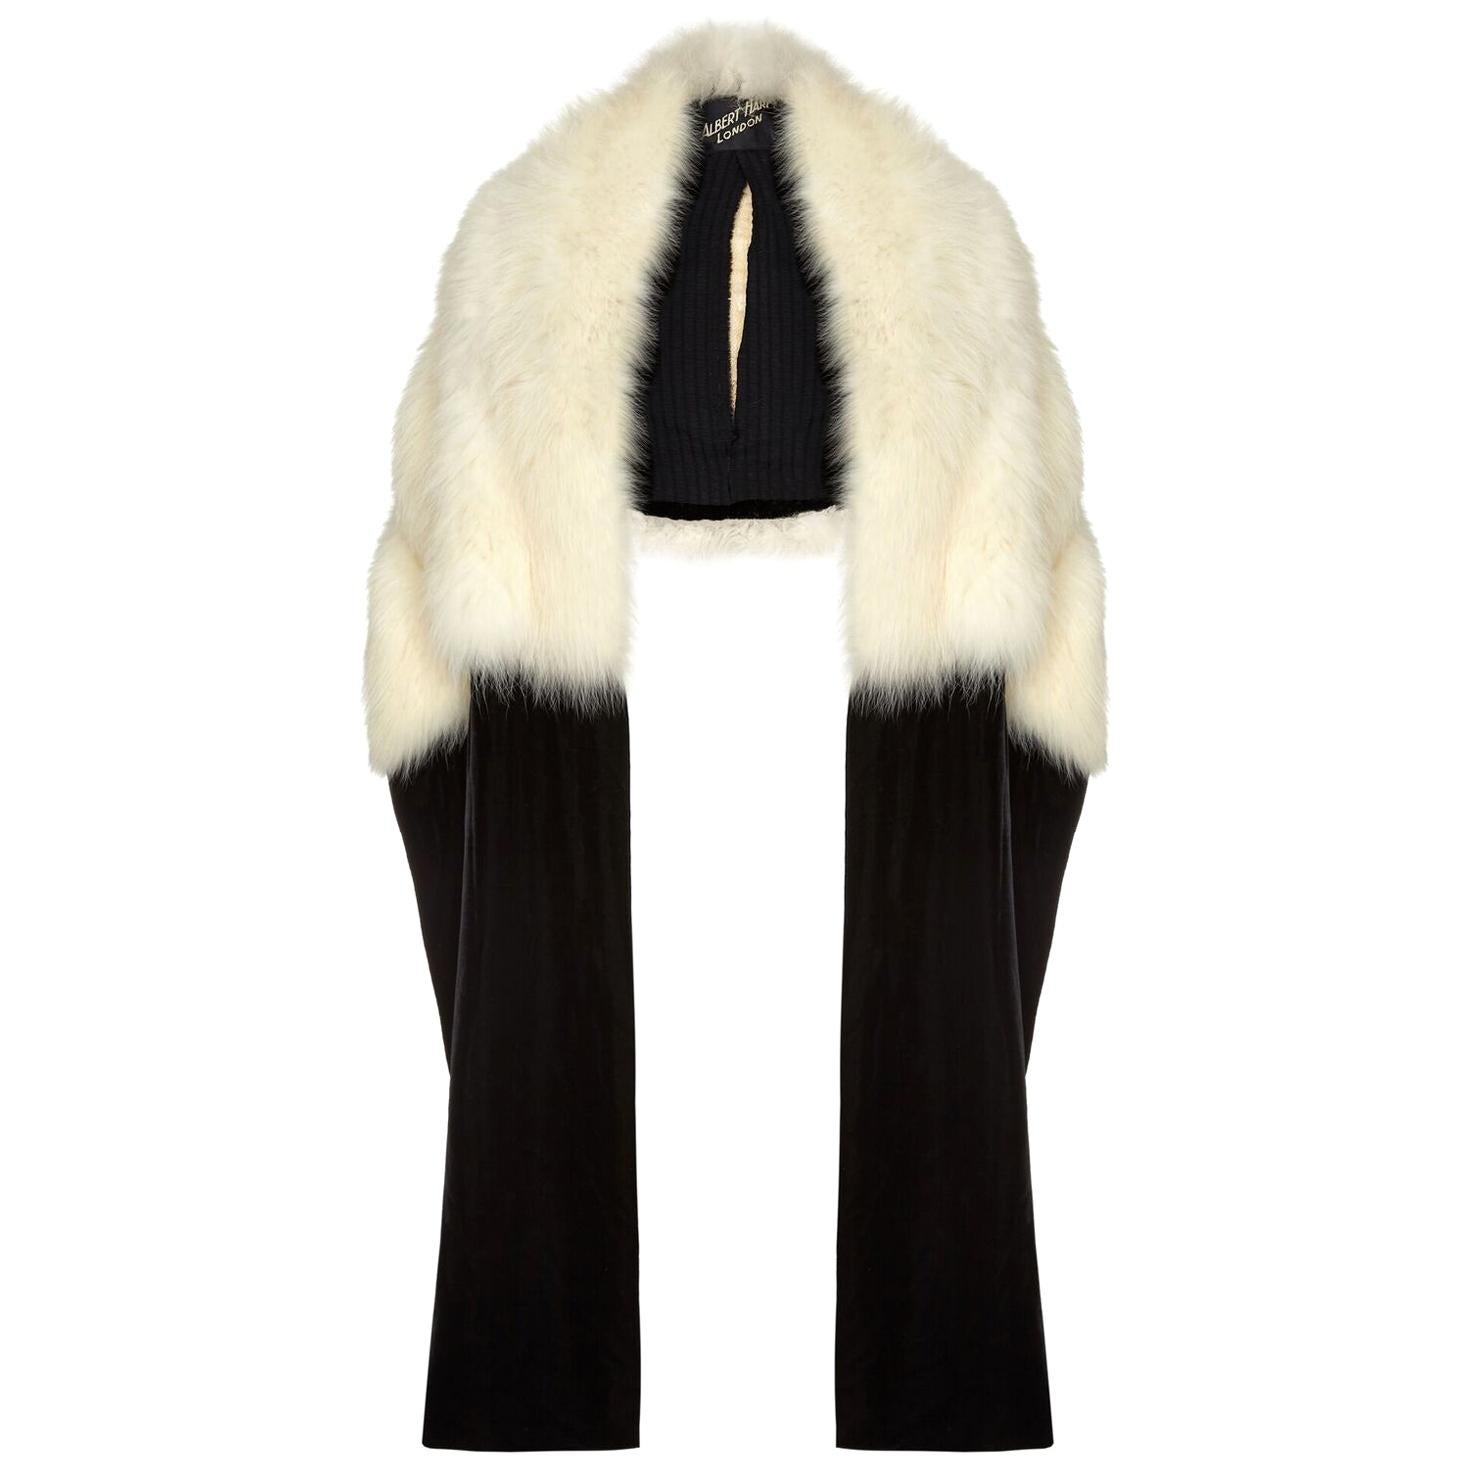 Sensational Albert Hart 1930s White Fox Fur Stole with Velvet and Silk Wrap